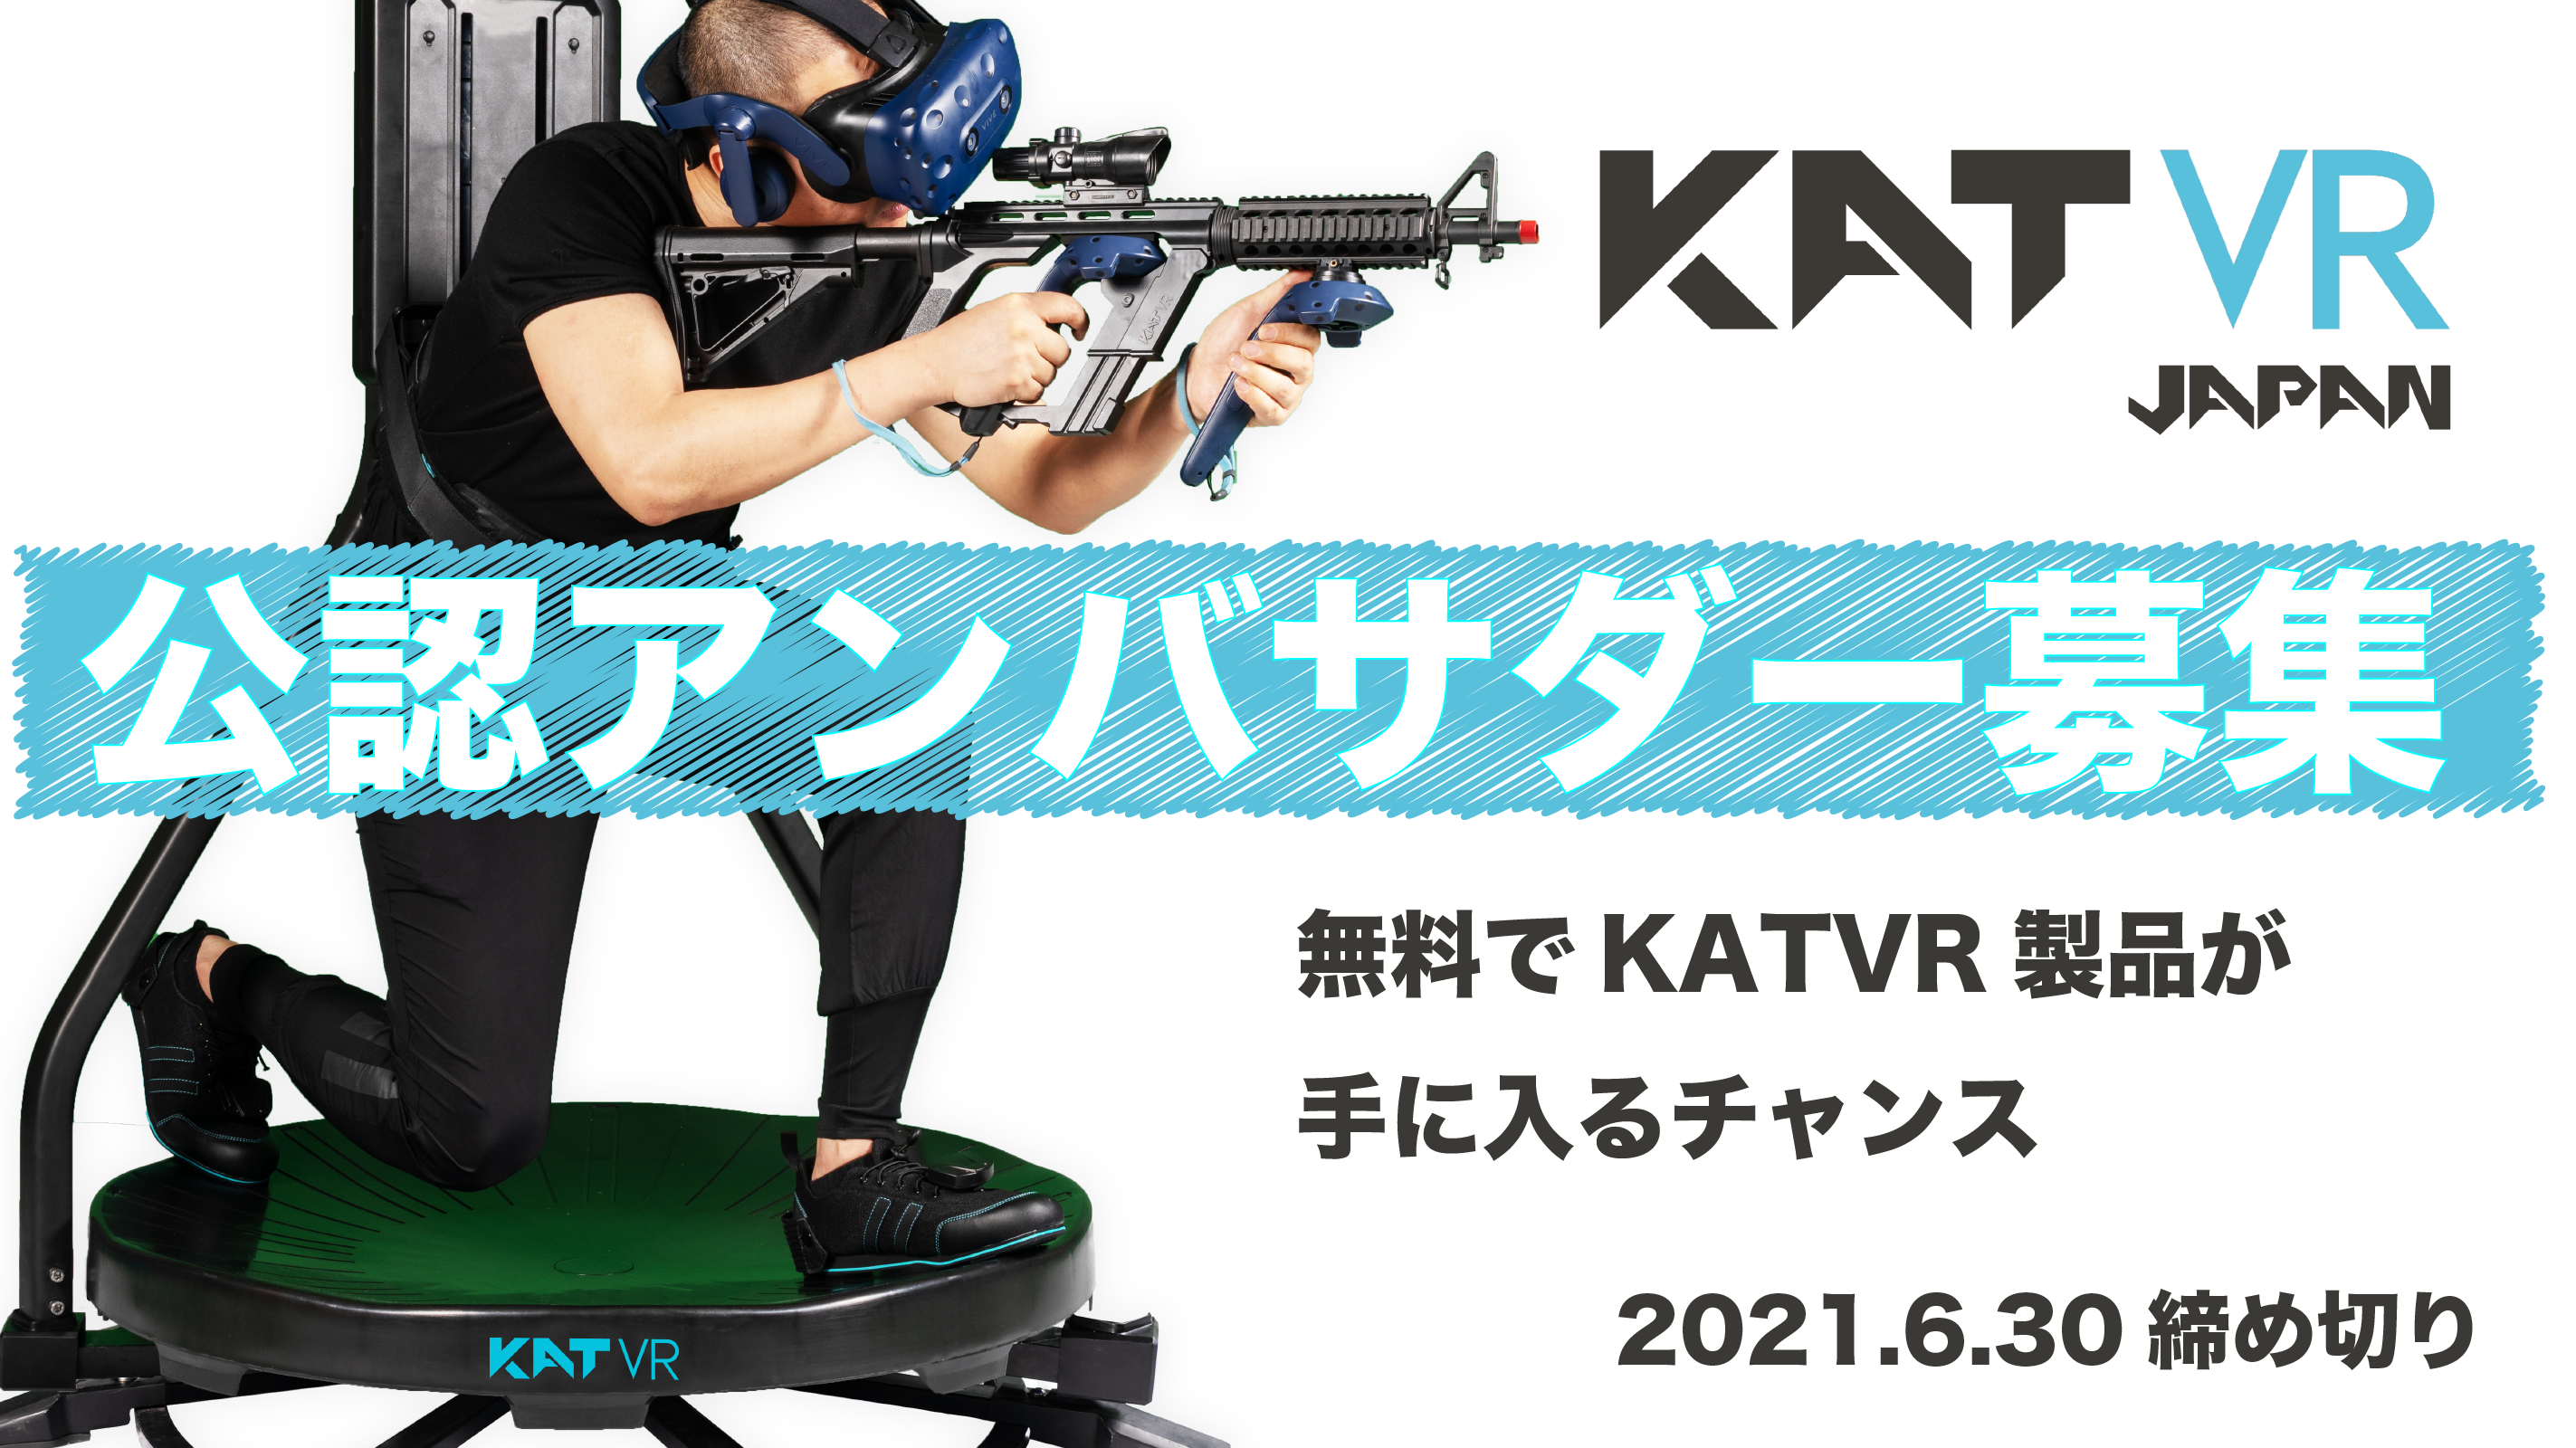 「ゲームの世界に入れるコントローラー」のKATVR日本総代理店が
公認アンバサダーを募集開始